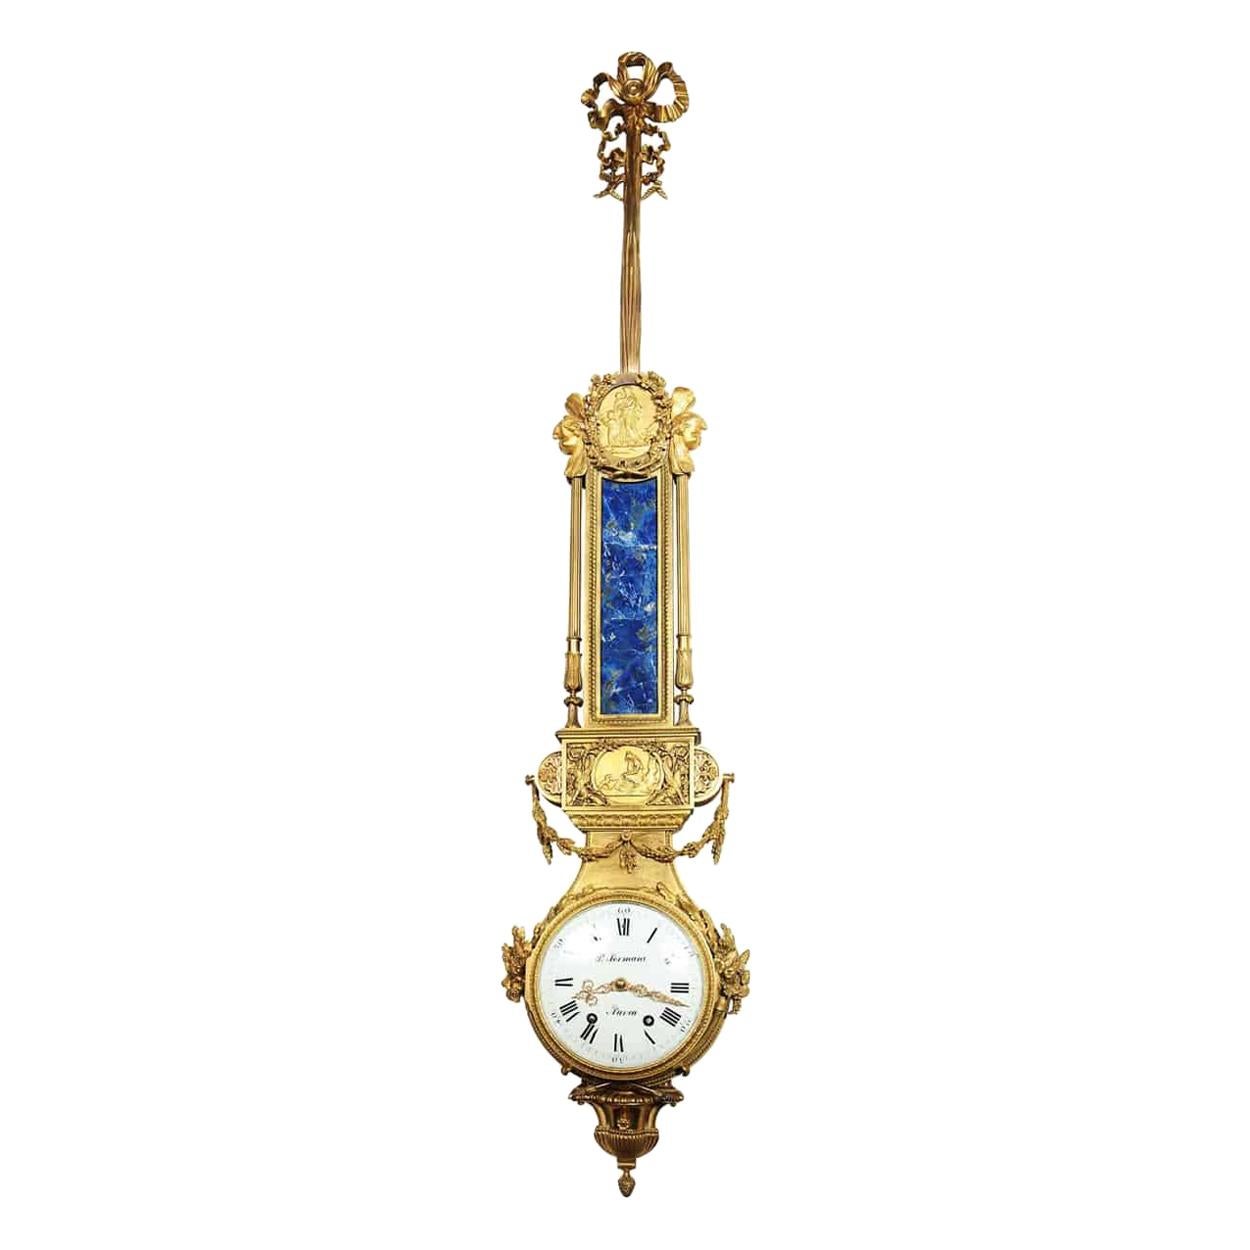 Paul Sormani Ormolu Wall Clock in Lapis Lazuli and Gold